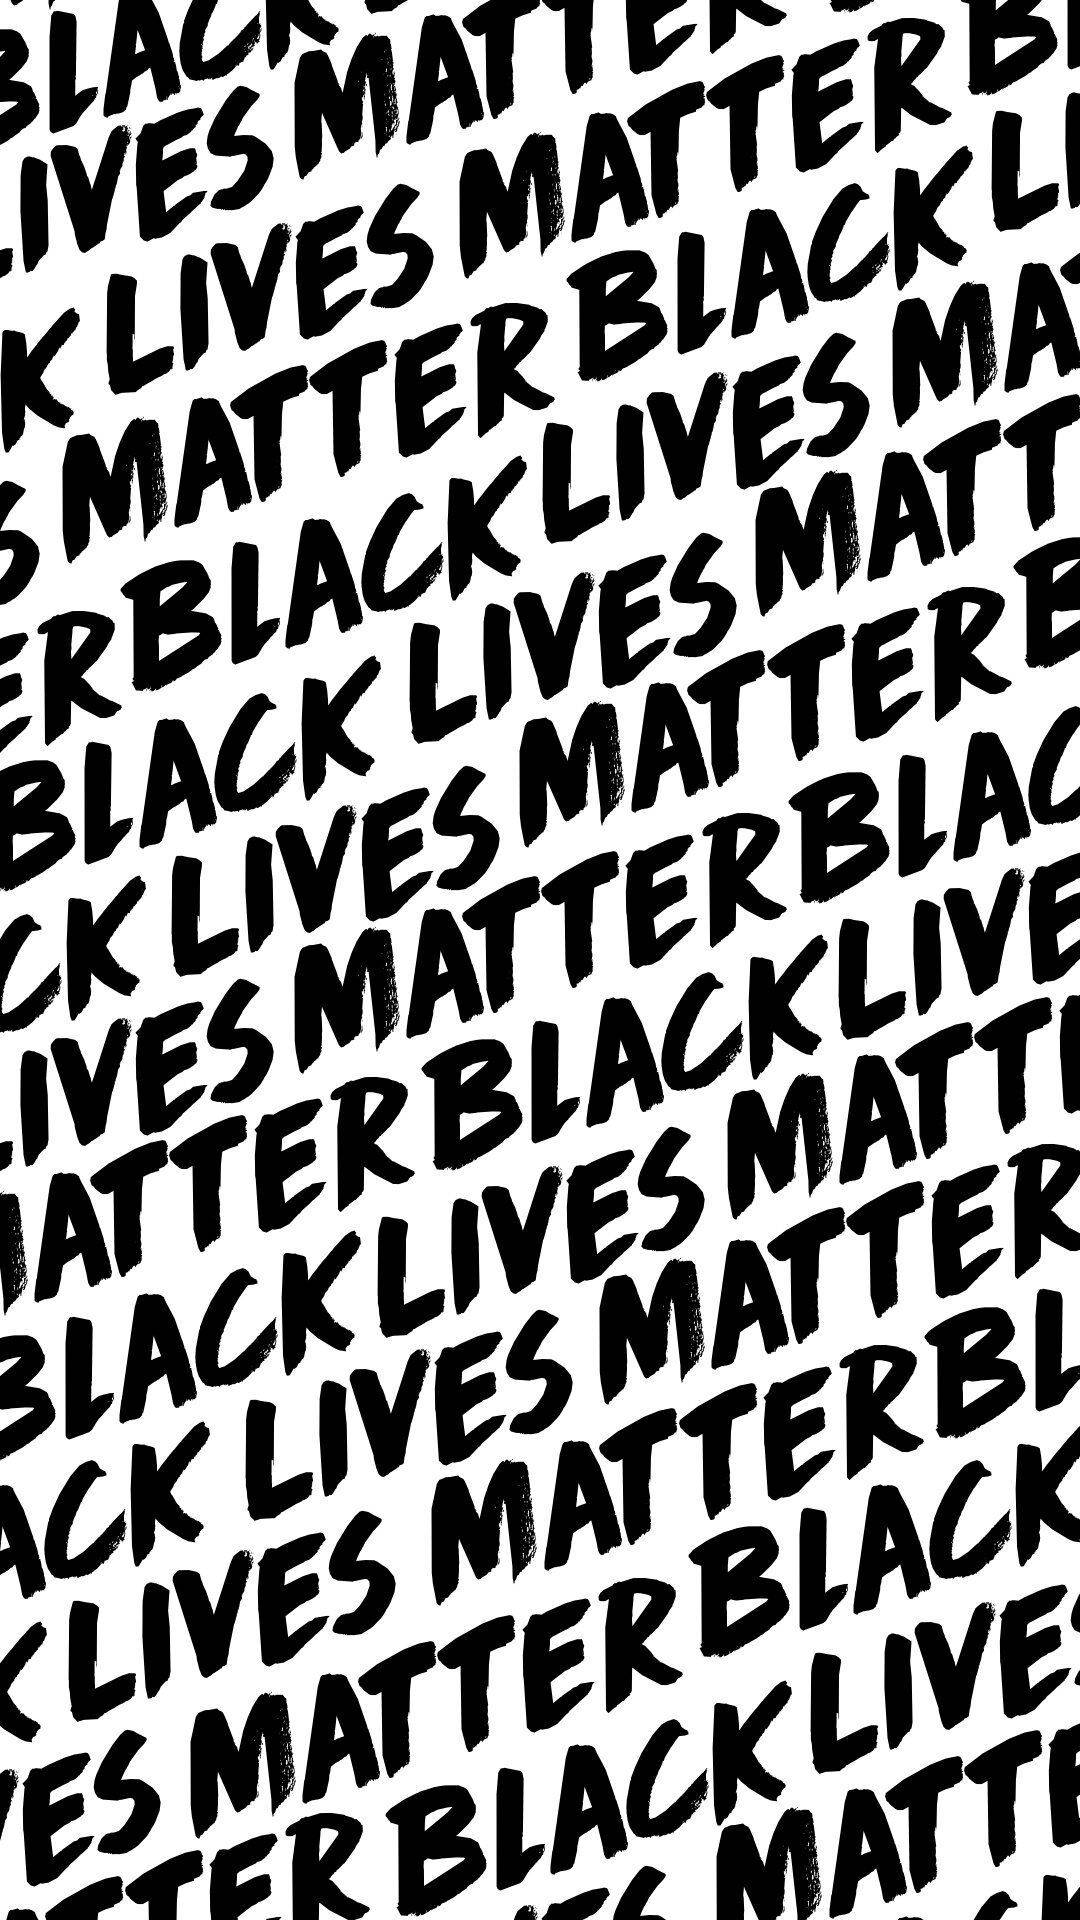 A Bold Stand - Black Lives Matter Text Art Wallpaper